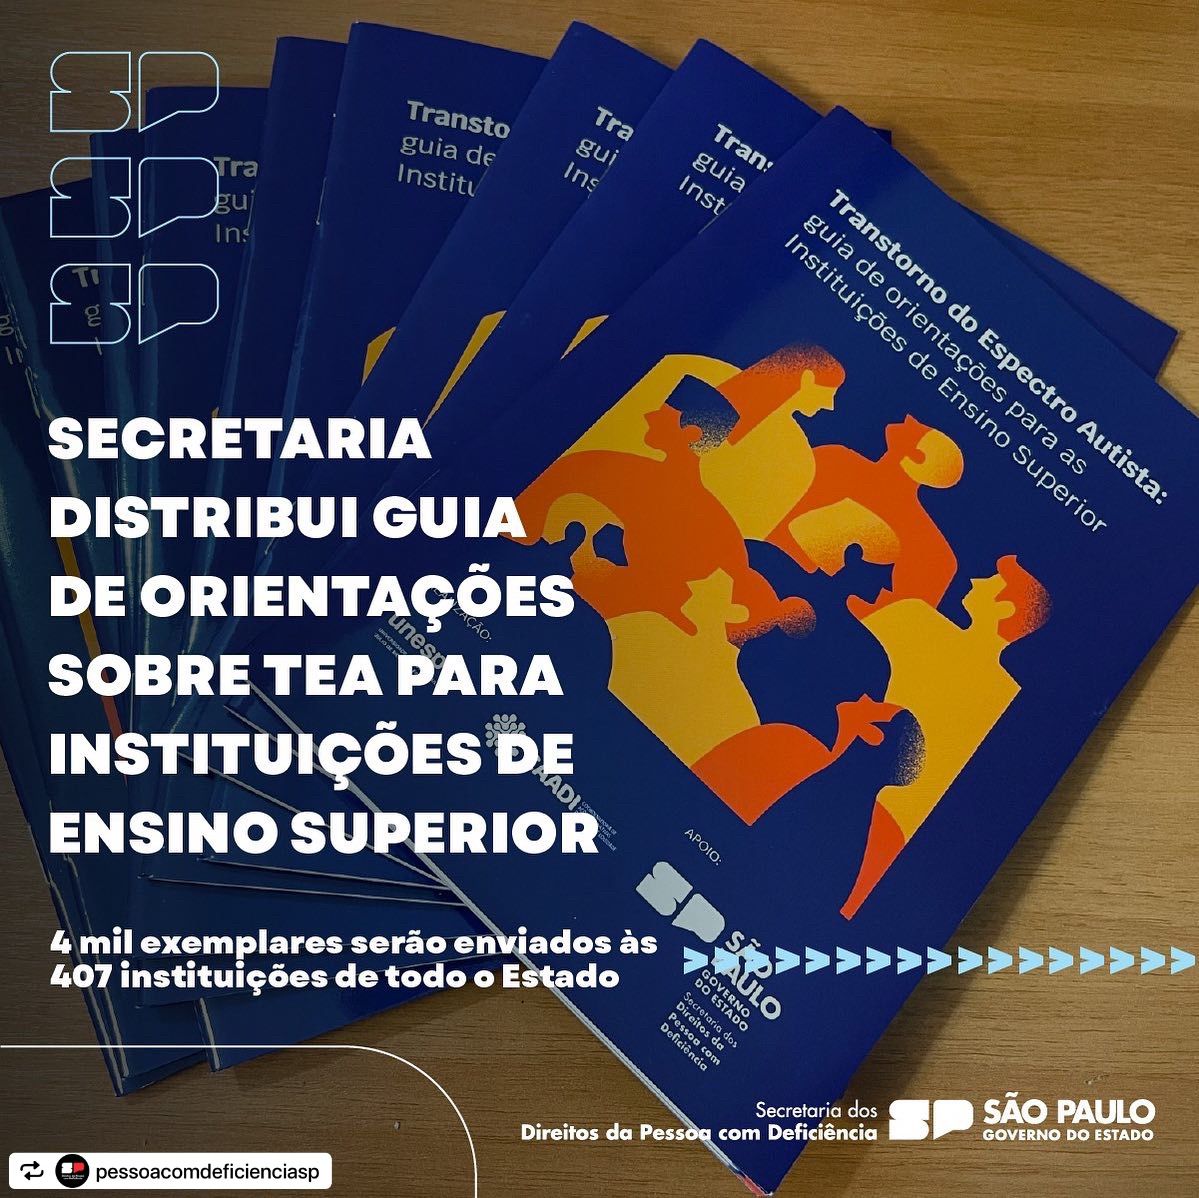 Governo de SP distribui guias com orientações para o acolhimento de autistas para mais de 400 universidades paulistas